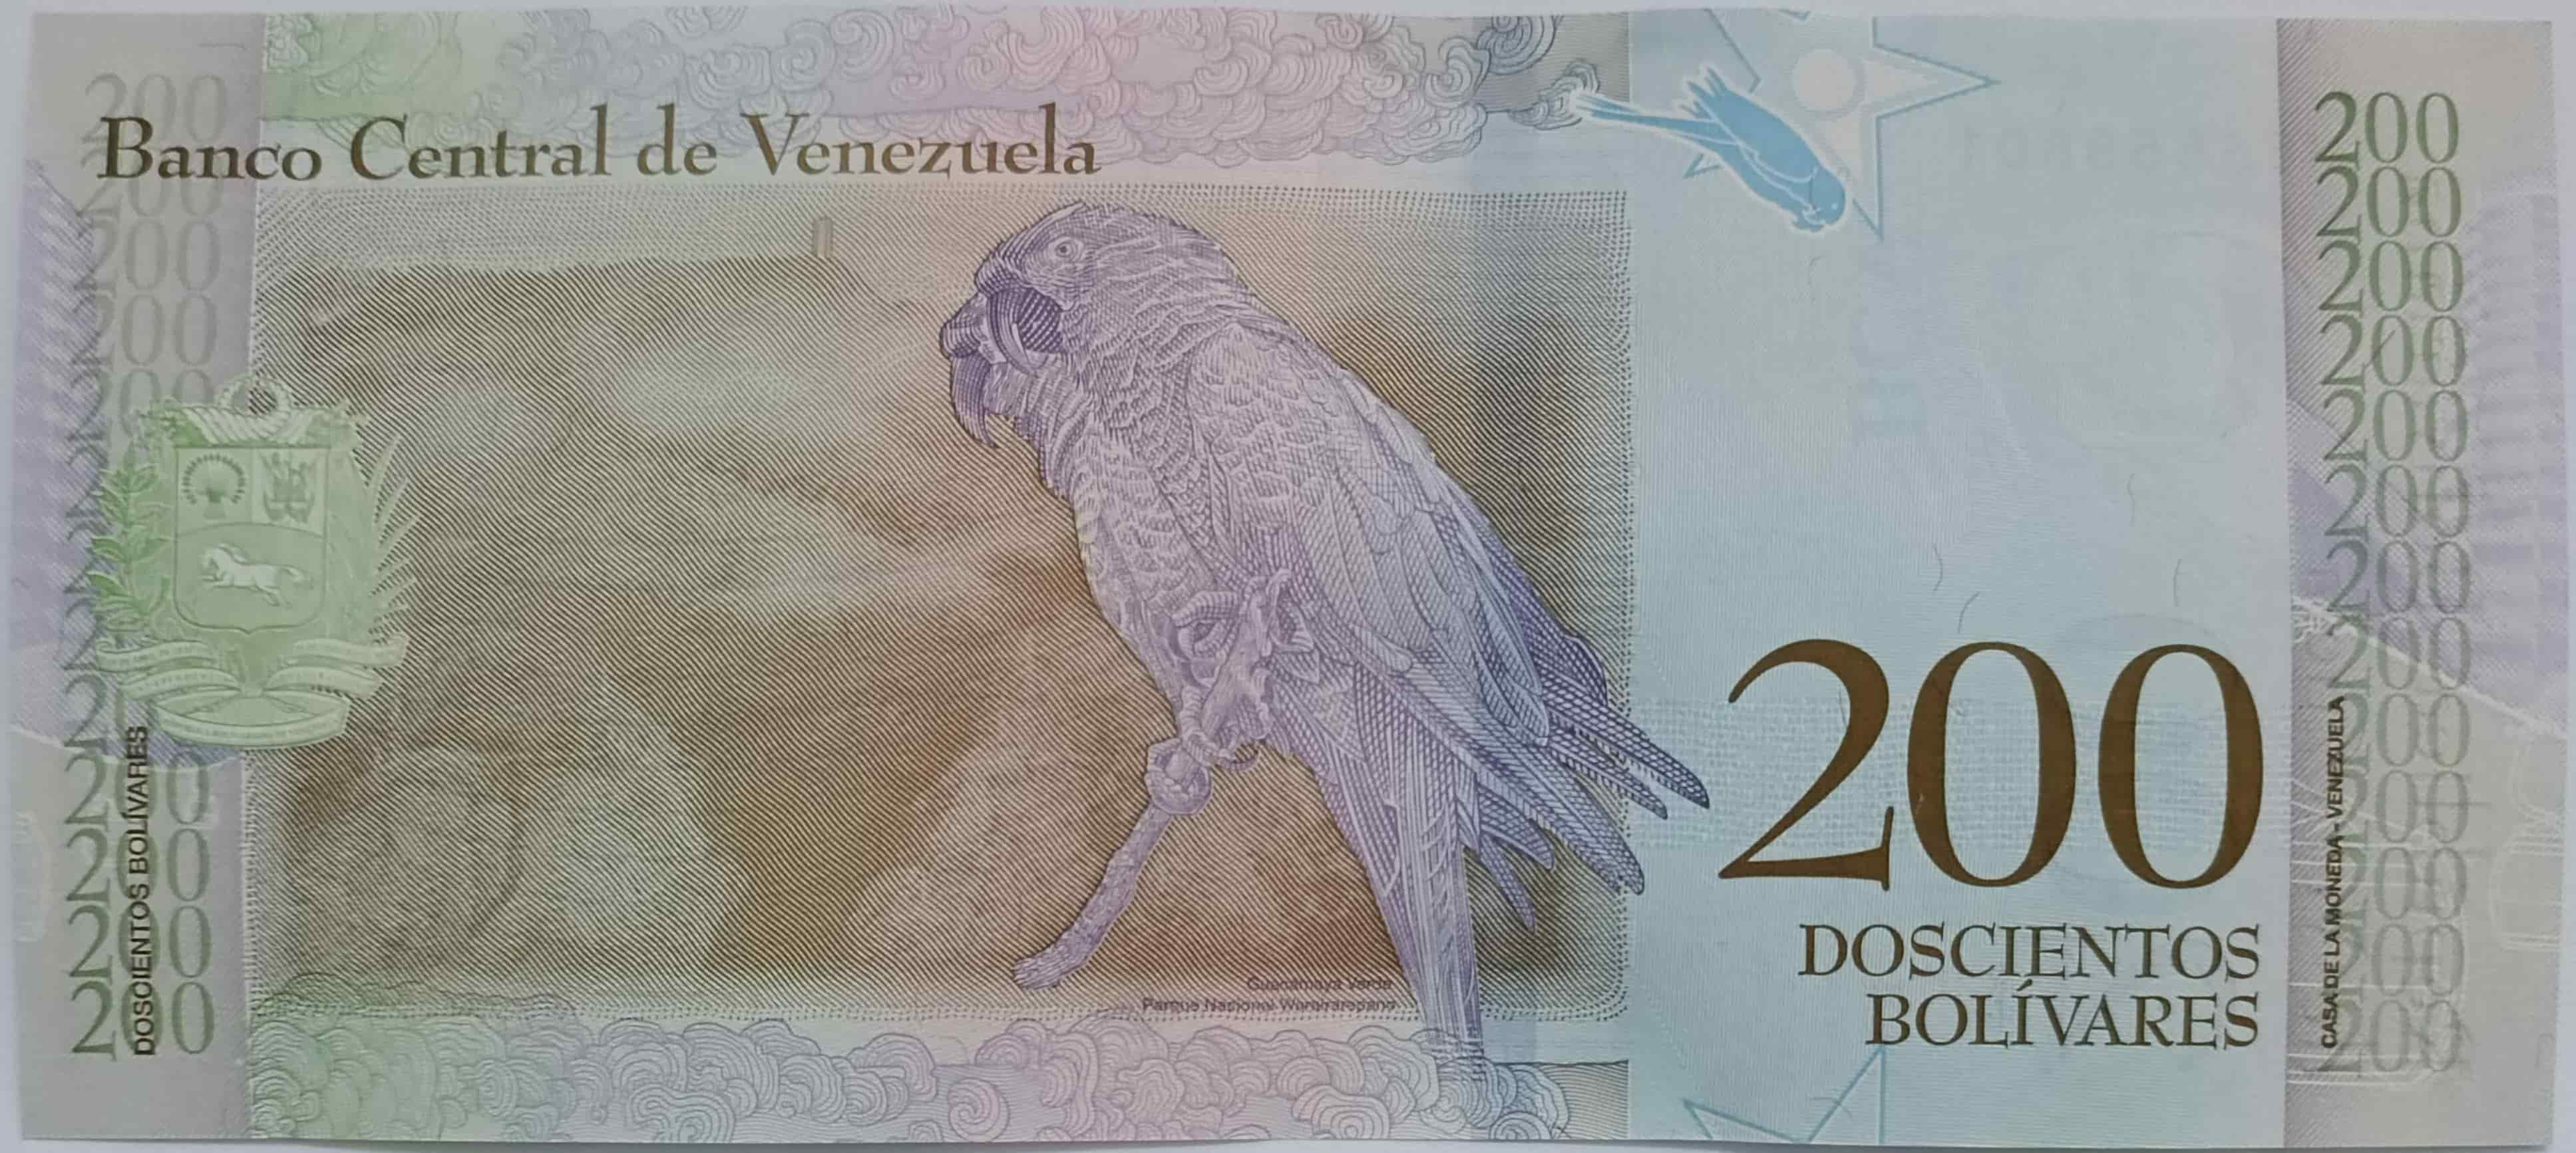 200 Bolivares 2018 Venezuela